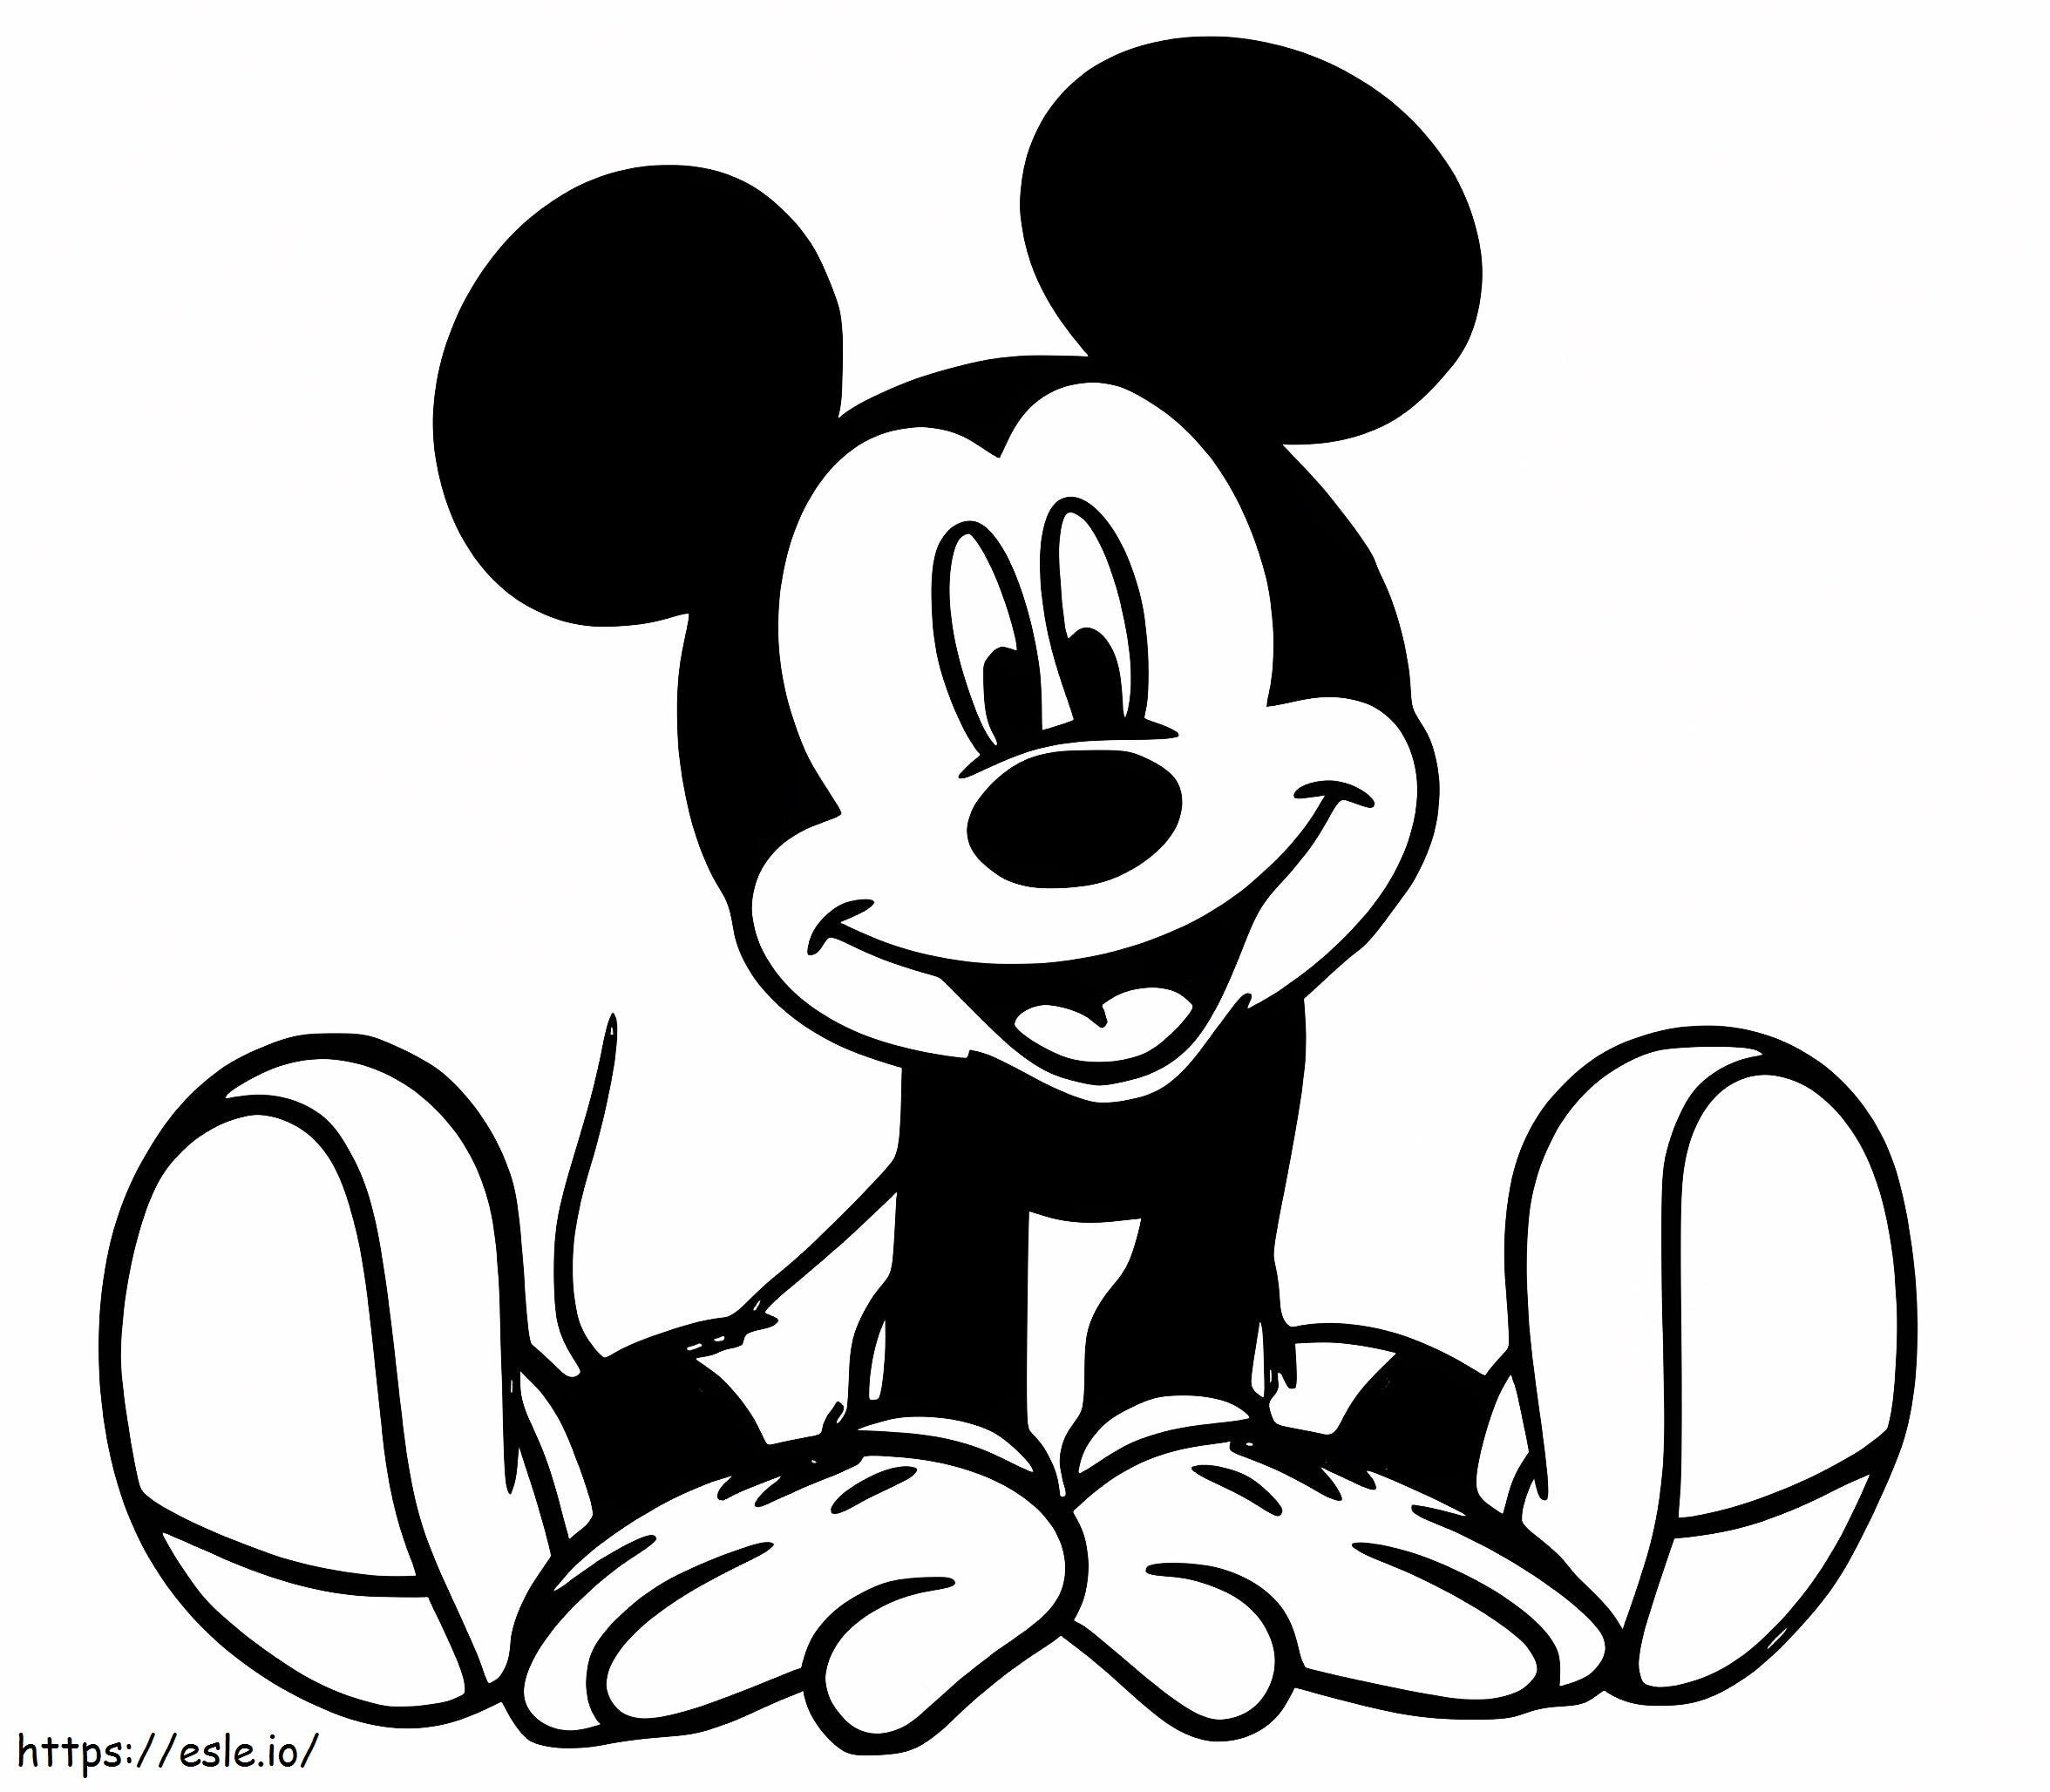  Mickey Mouse Sonriendo A4 para colorear